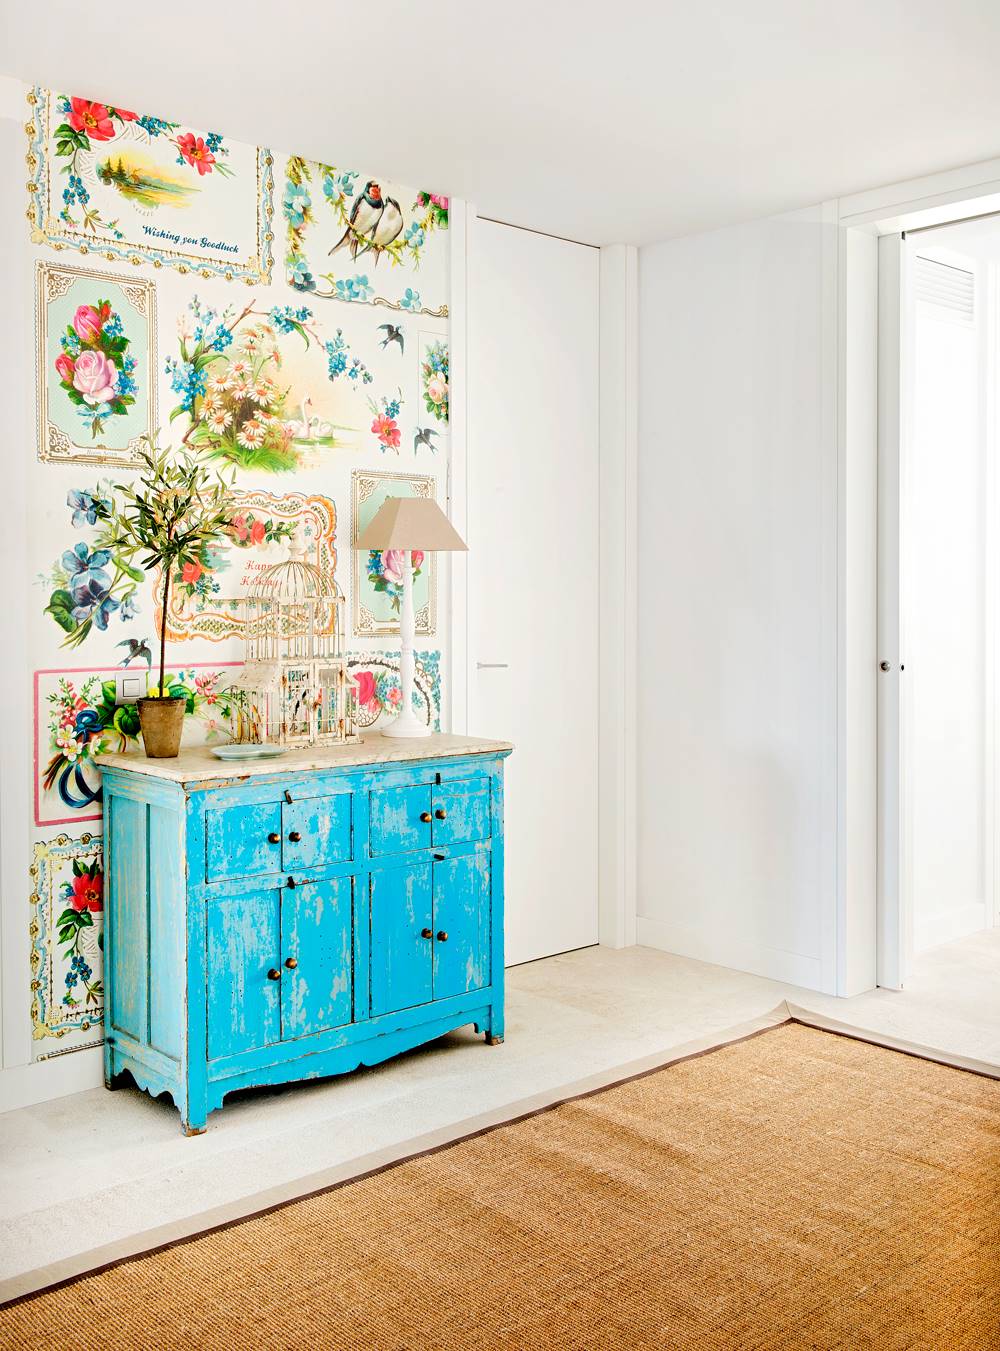 Recibidor con mueble vintage pintado de azul y pared a cuadros en colores vistosos 433831